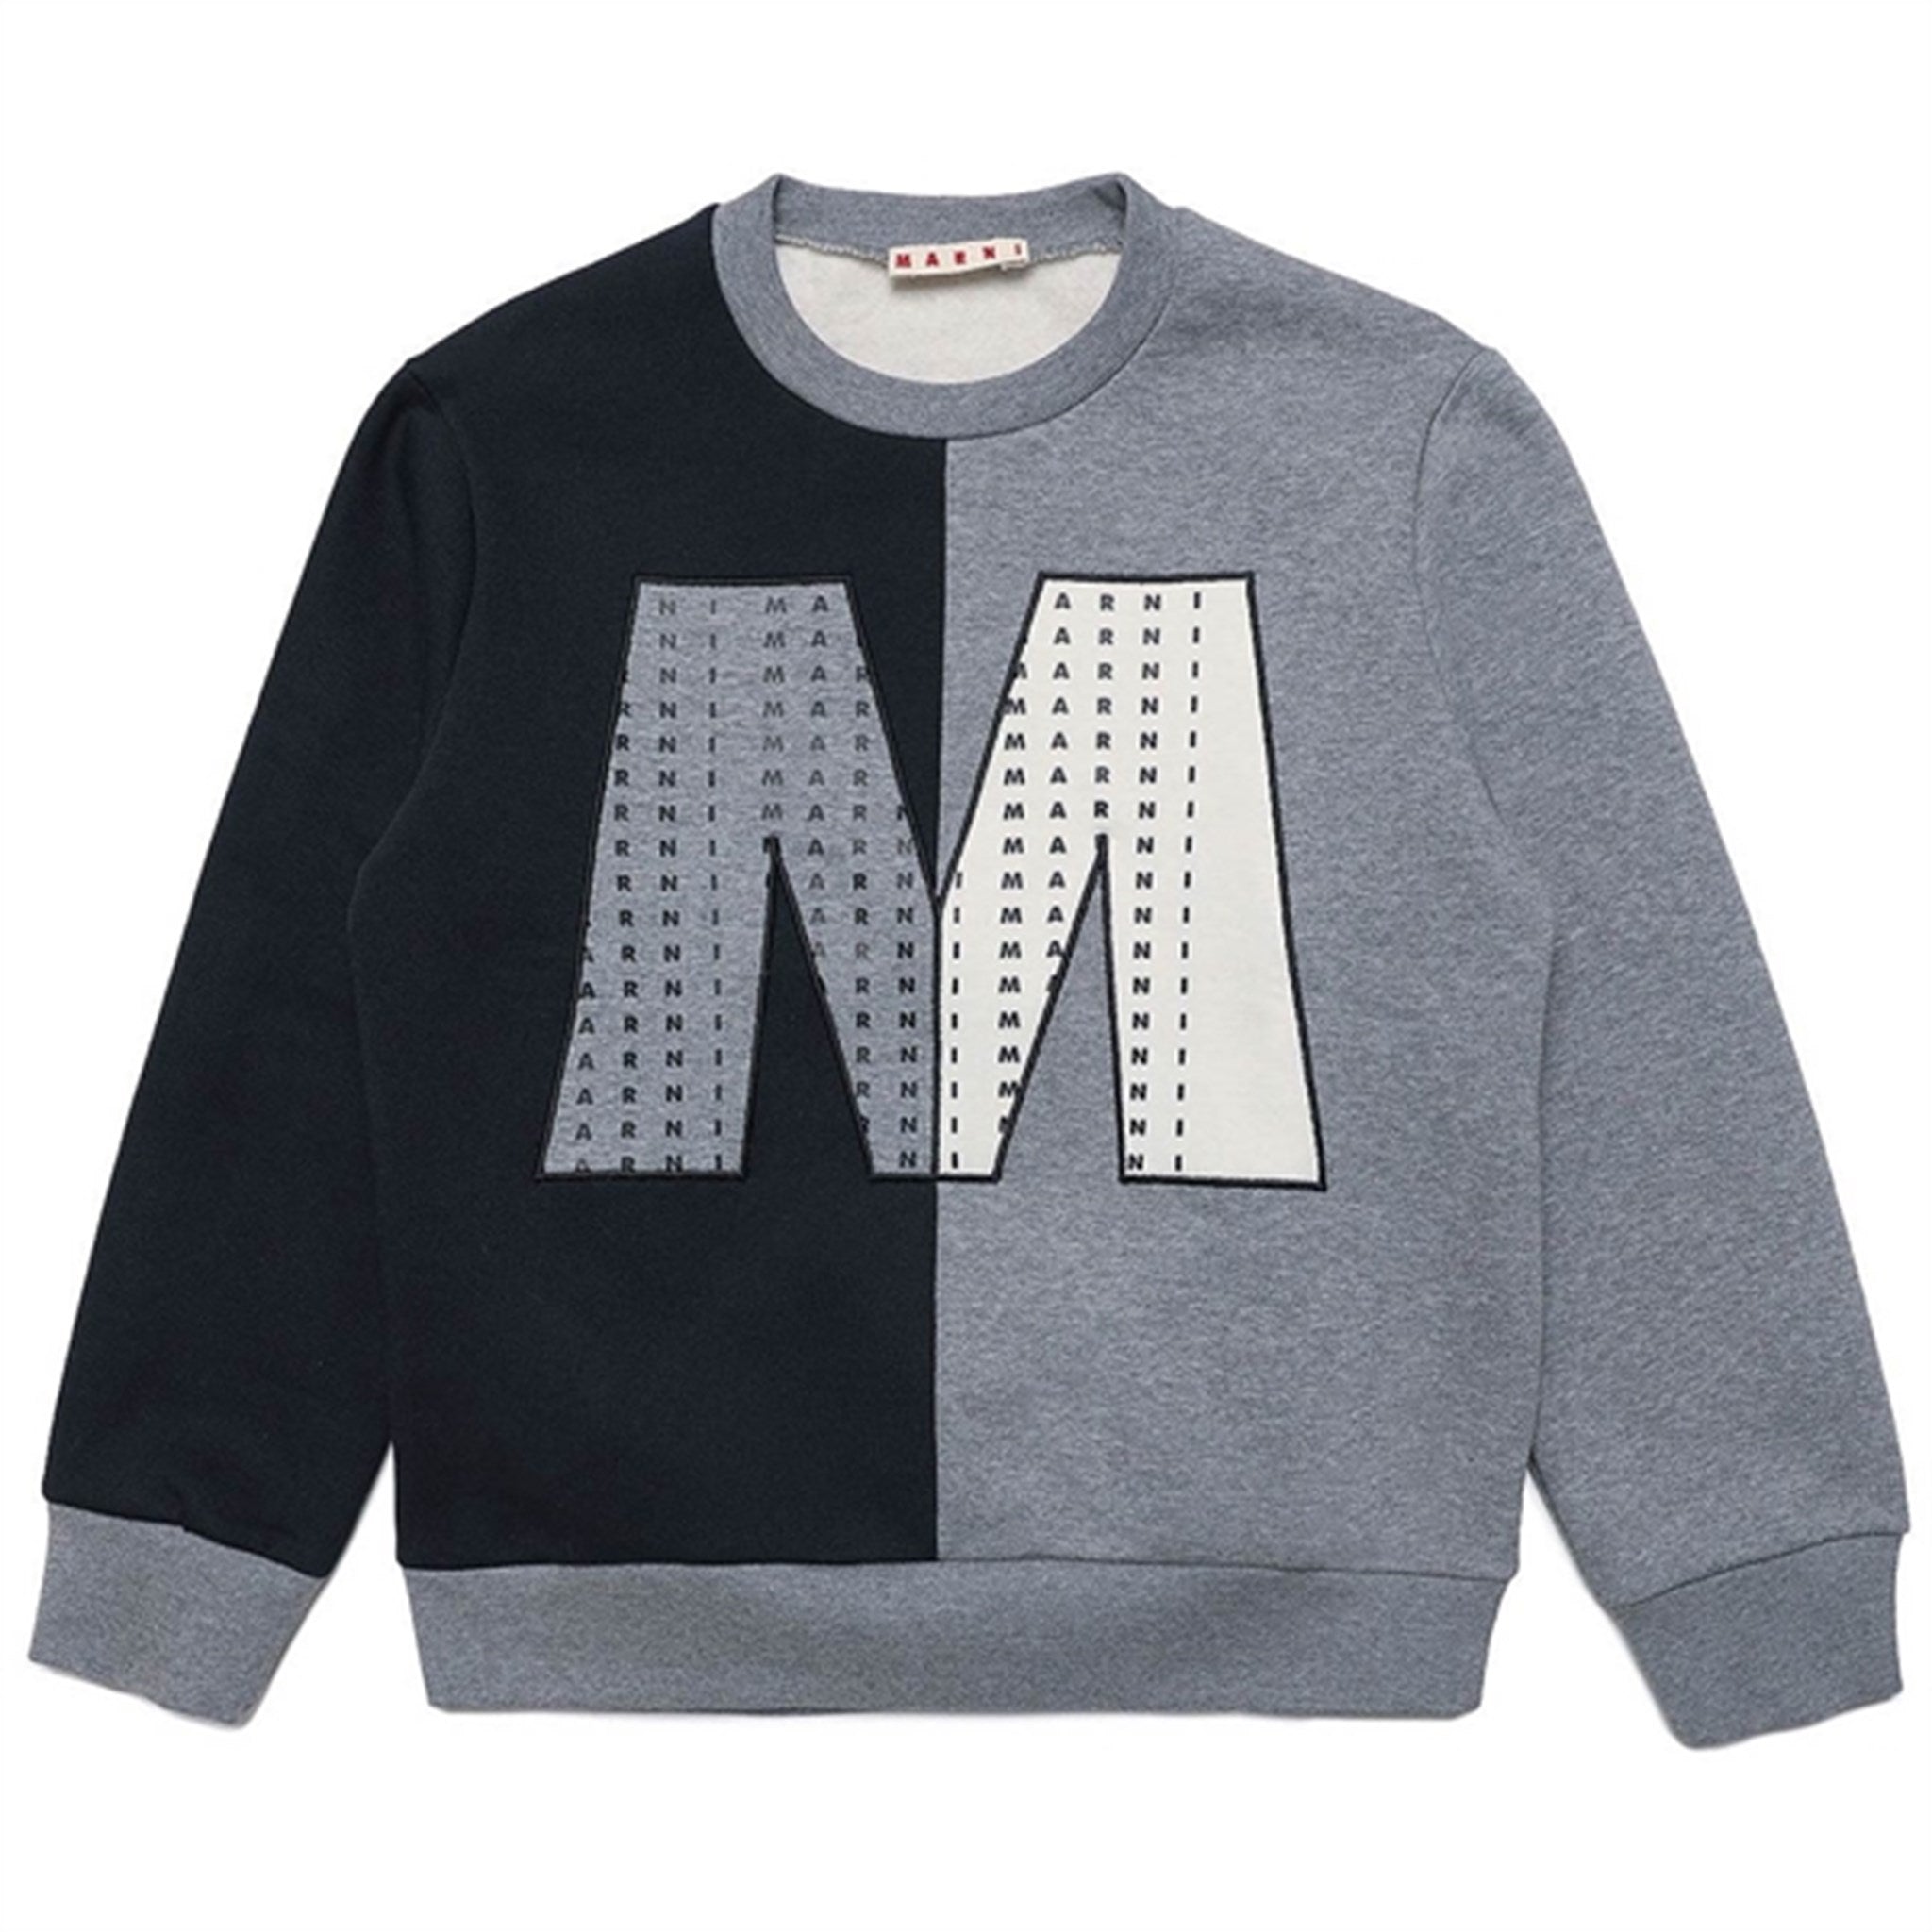 Marni Black/Grey Sweatshirt